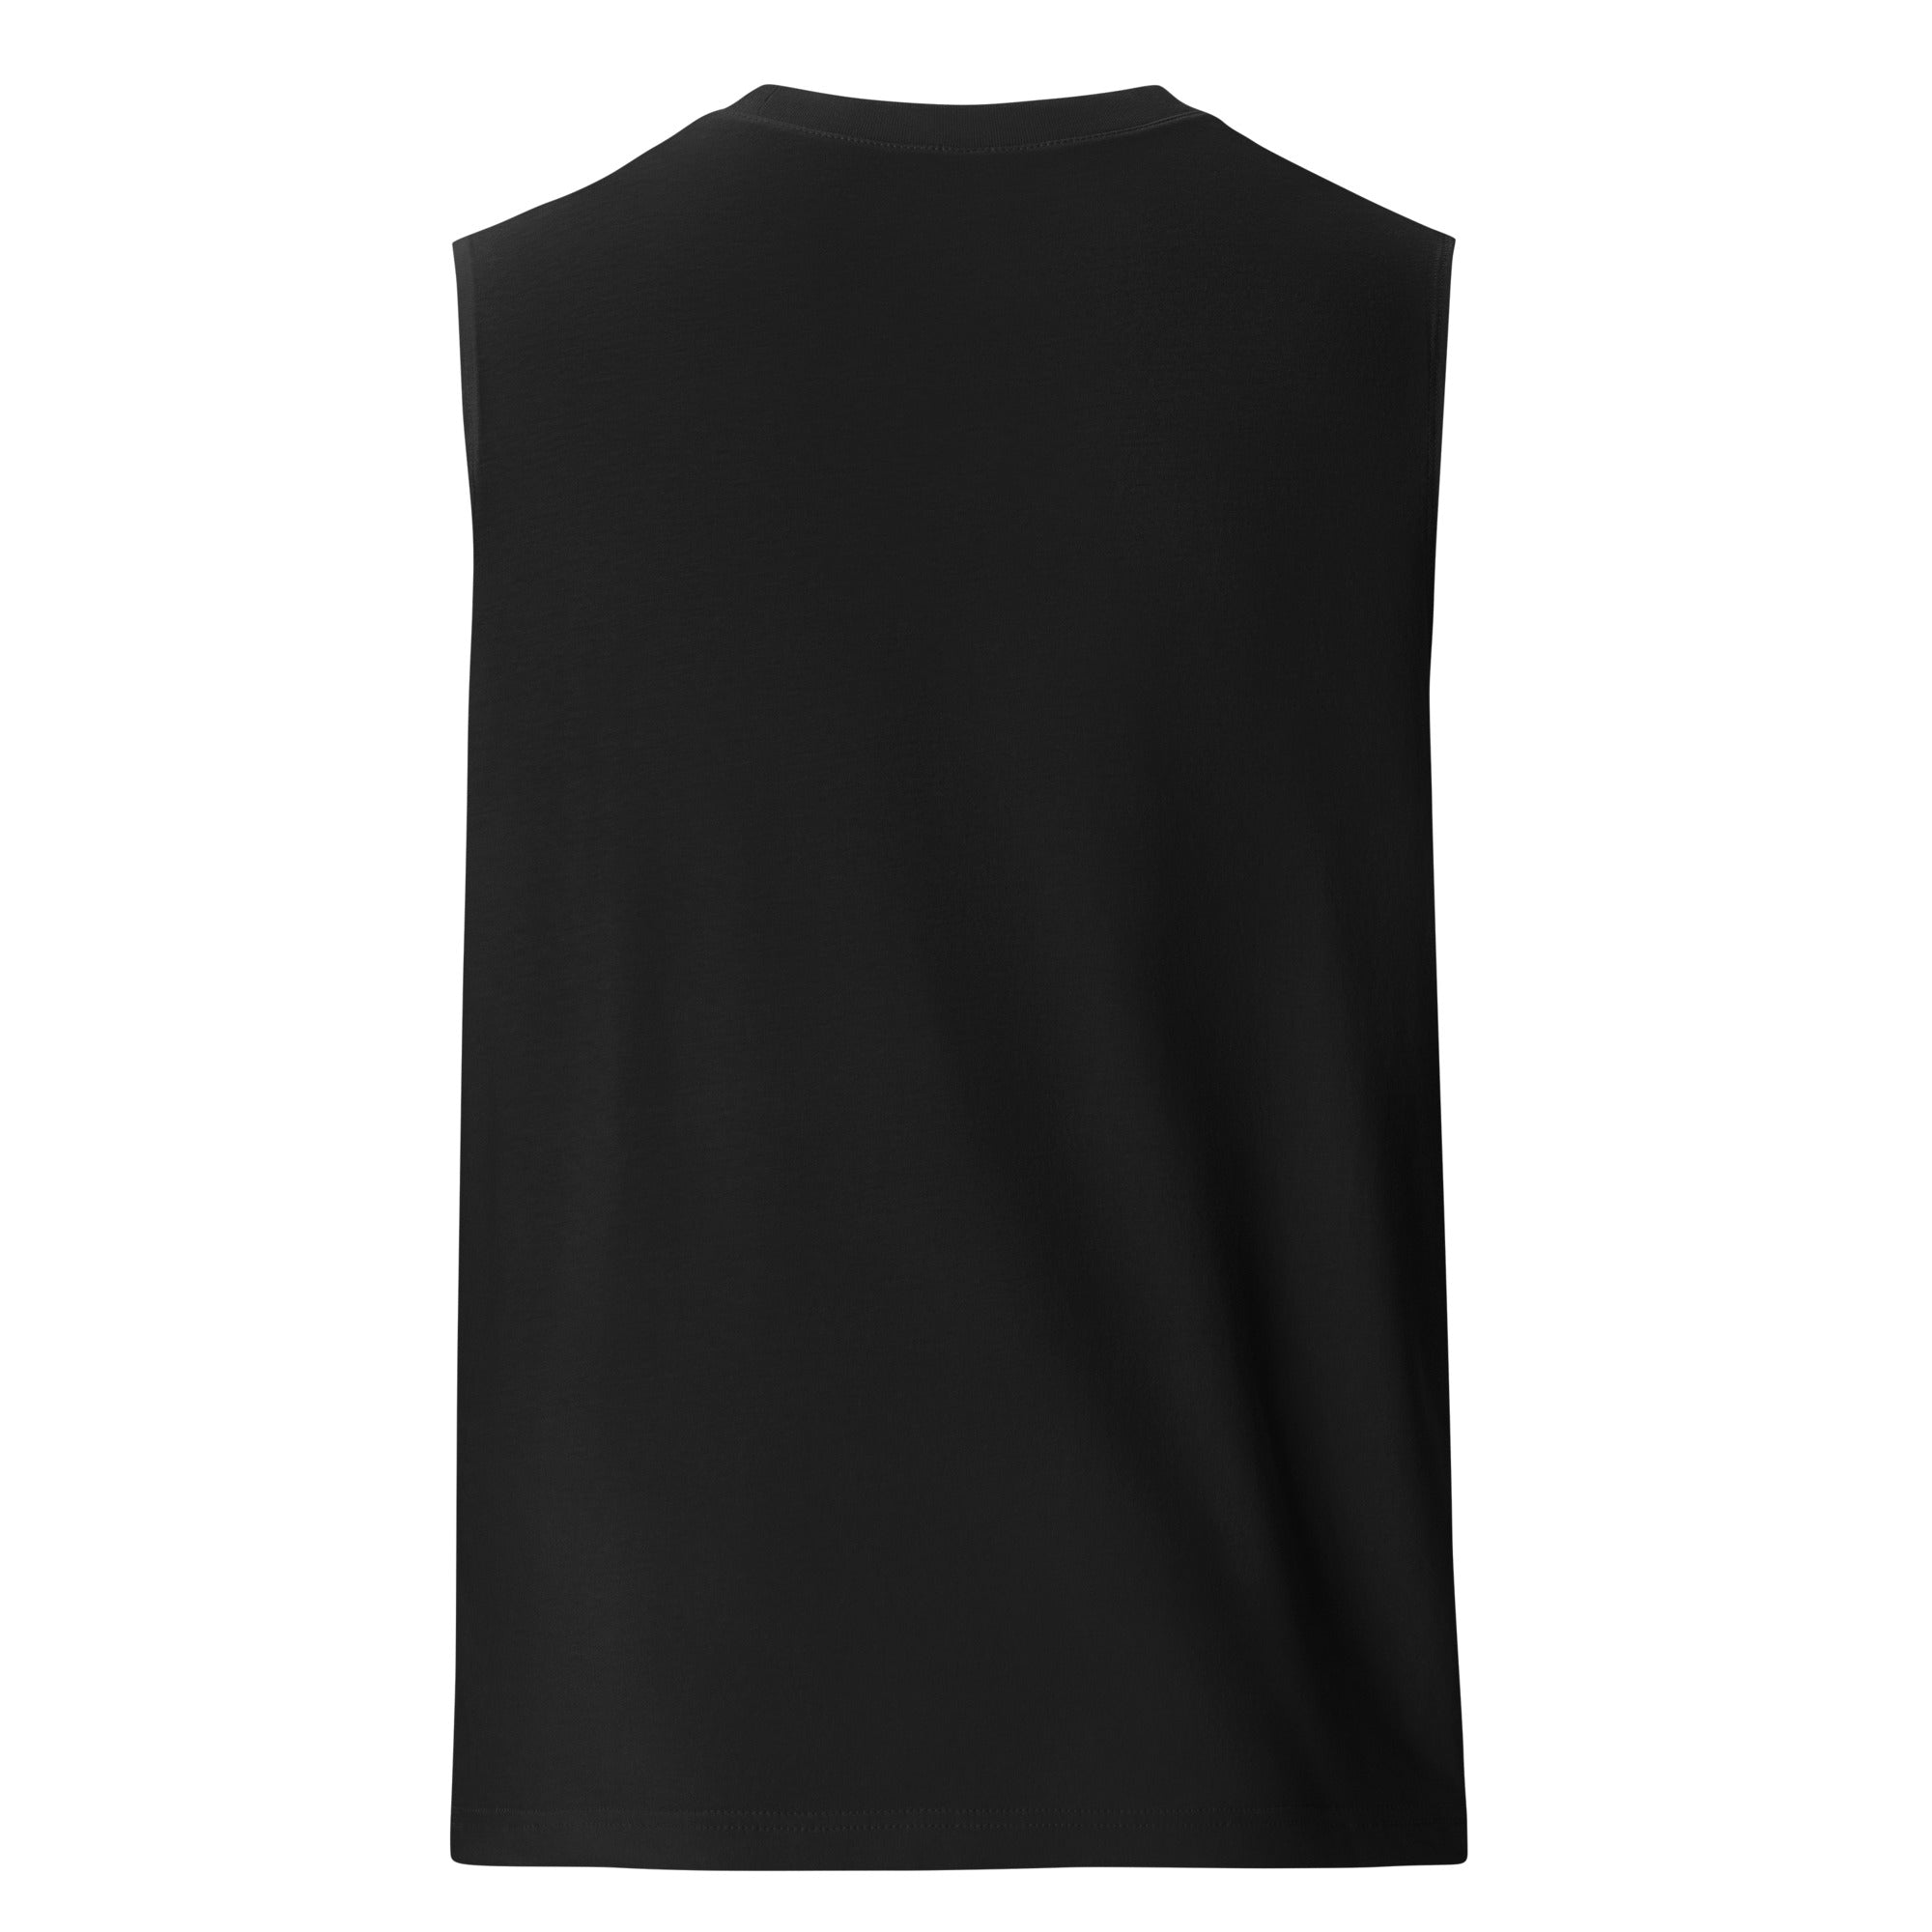 NWDC Sleeveless Shirt (Black)